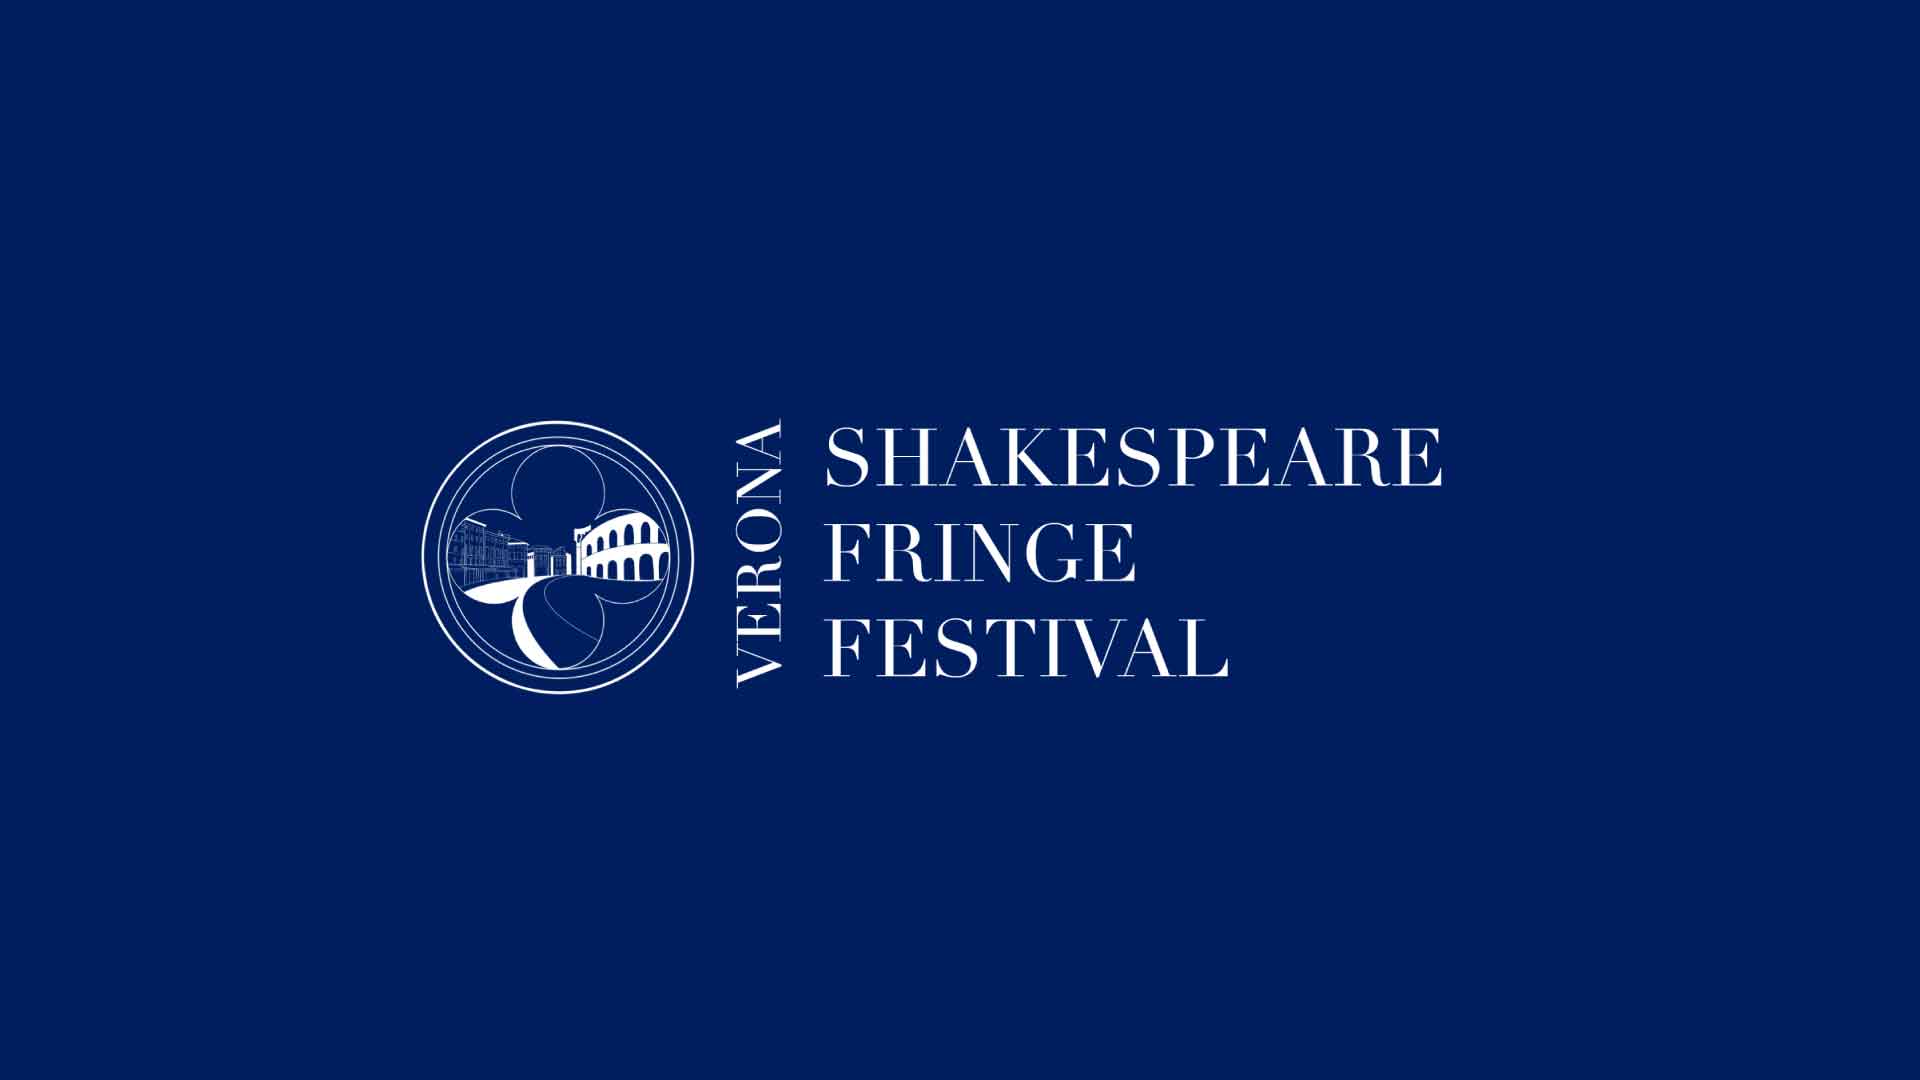 Verona Shakespeare Fringe Festival